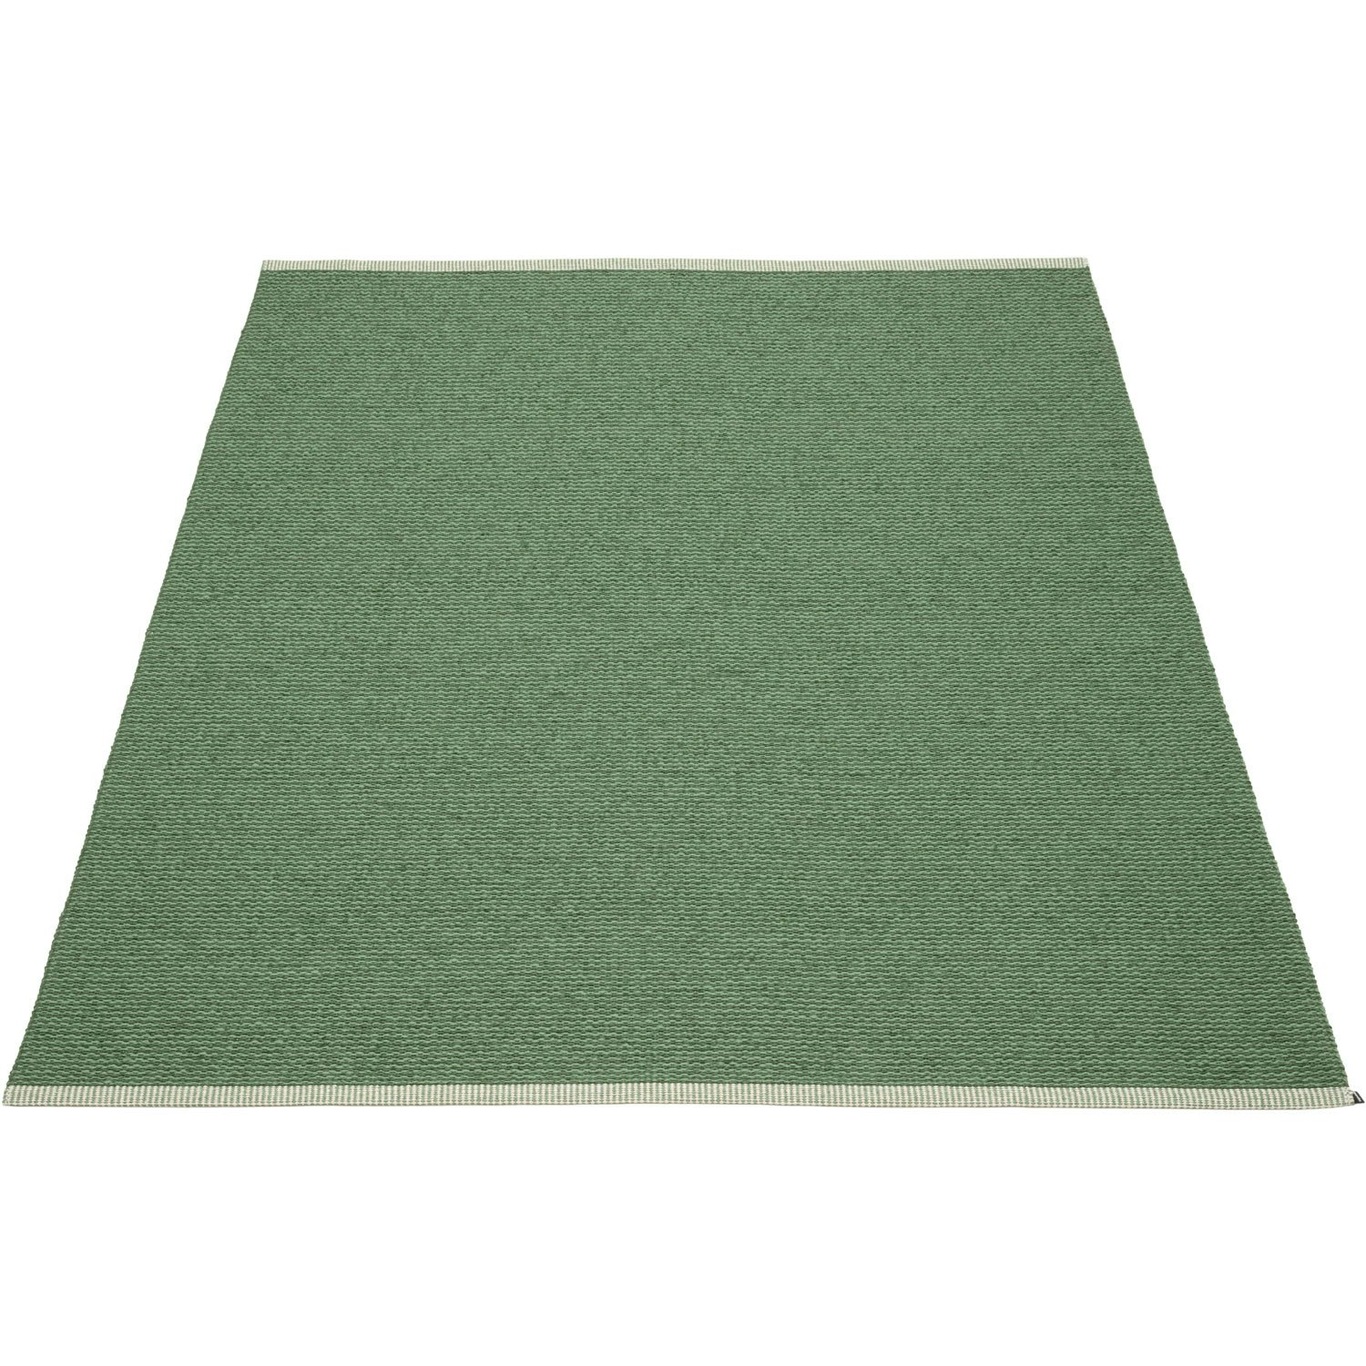 Mono Vloerkleed Groen/Leaf, 230x32 cm